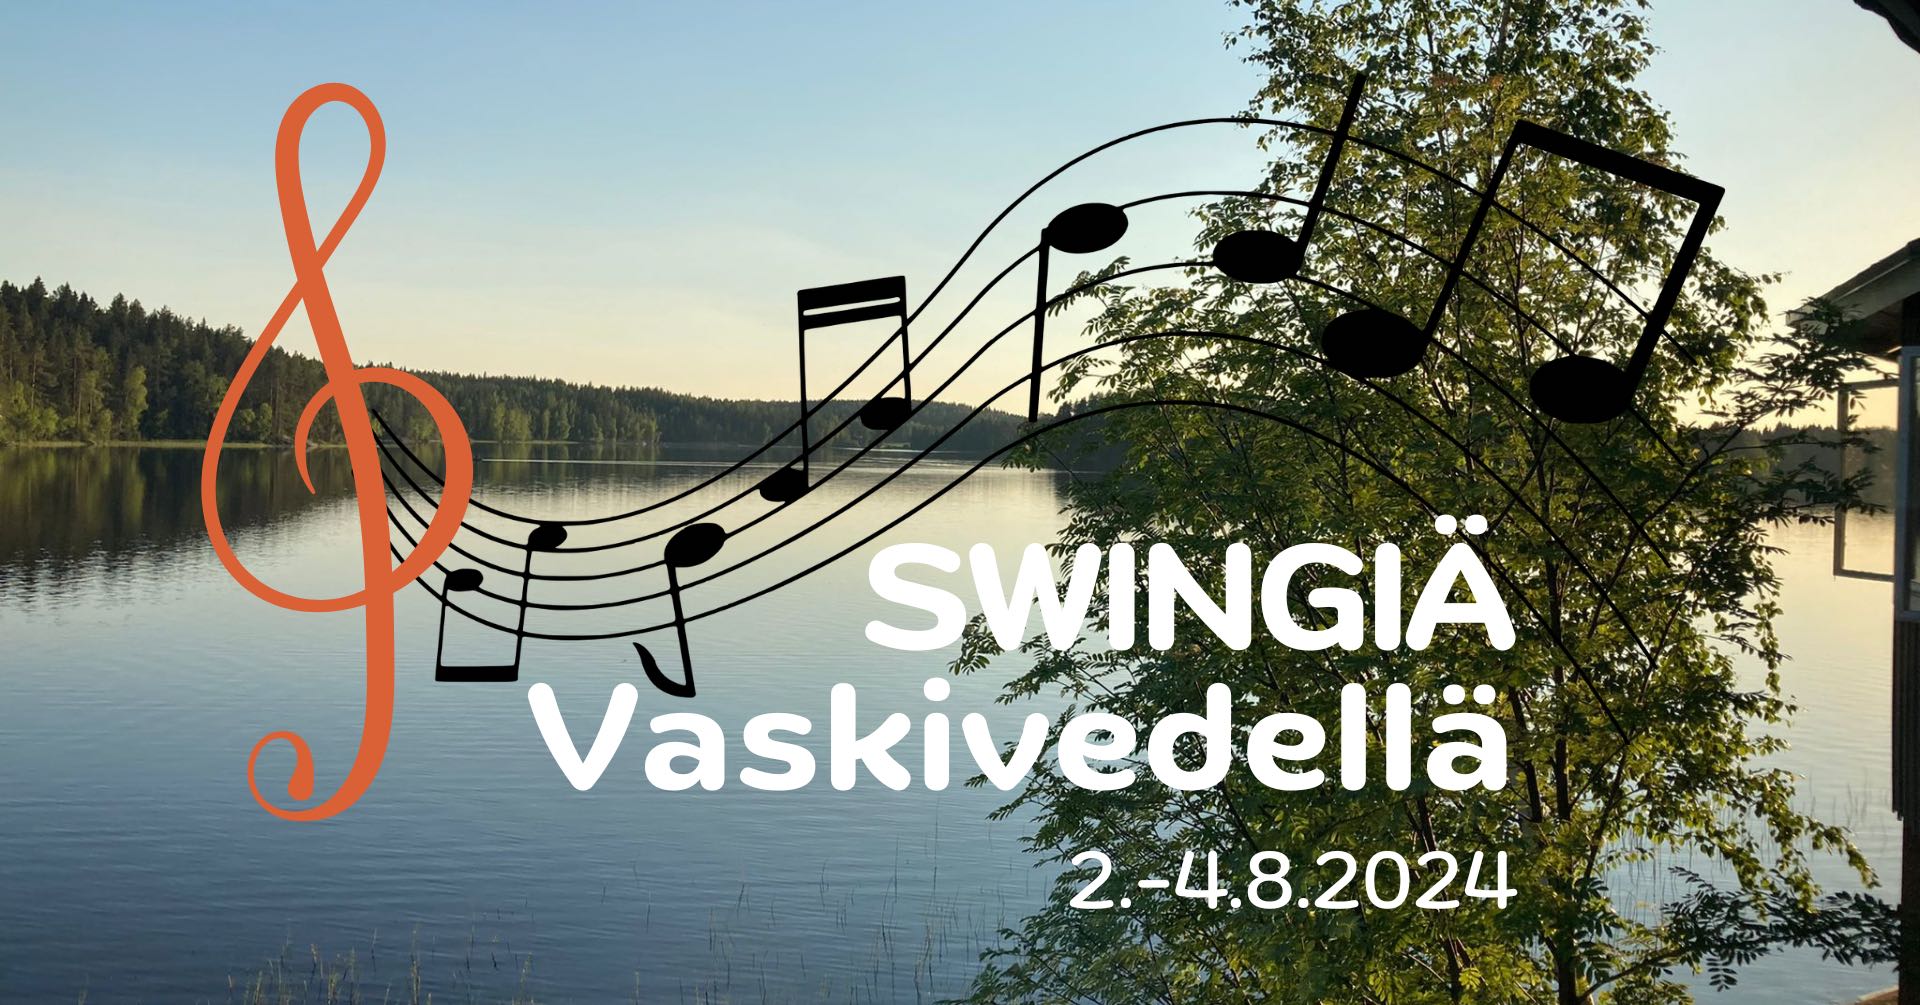 Vaskivesi Swing dance camp 2-4 August 2024